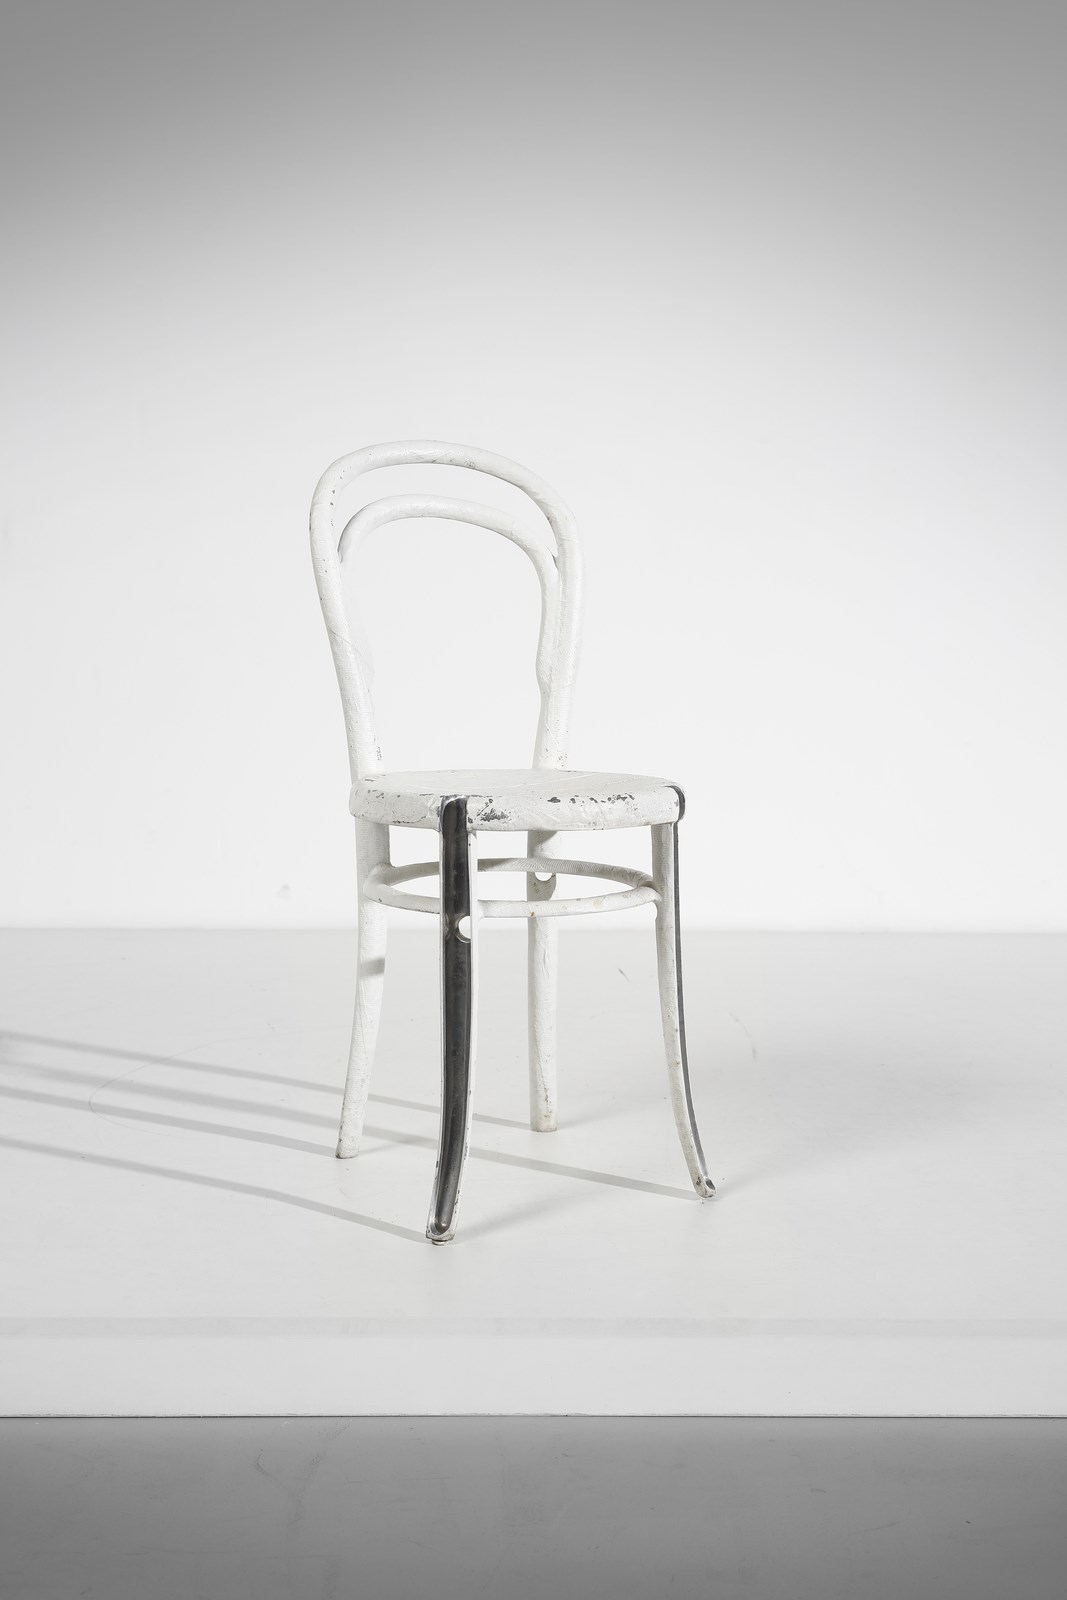 Re-Thonet 14 chair (Andrea Salvetti)